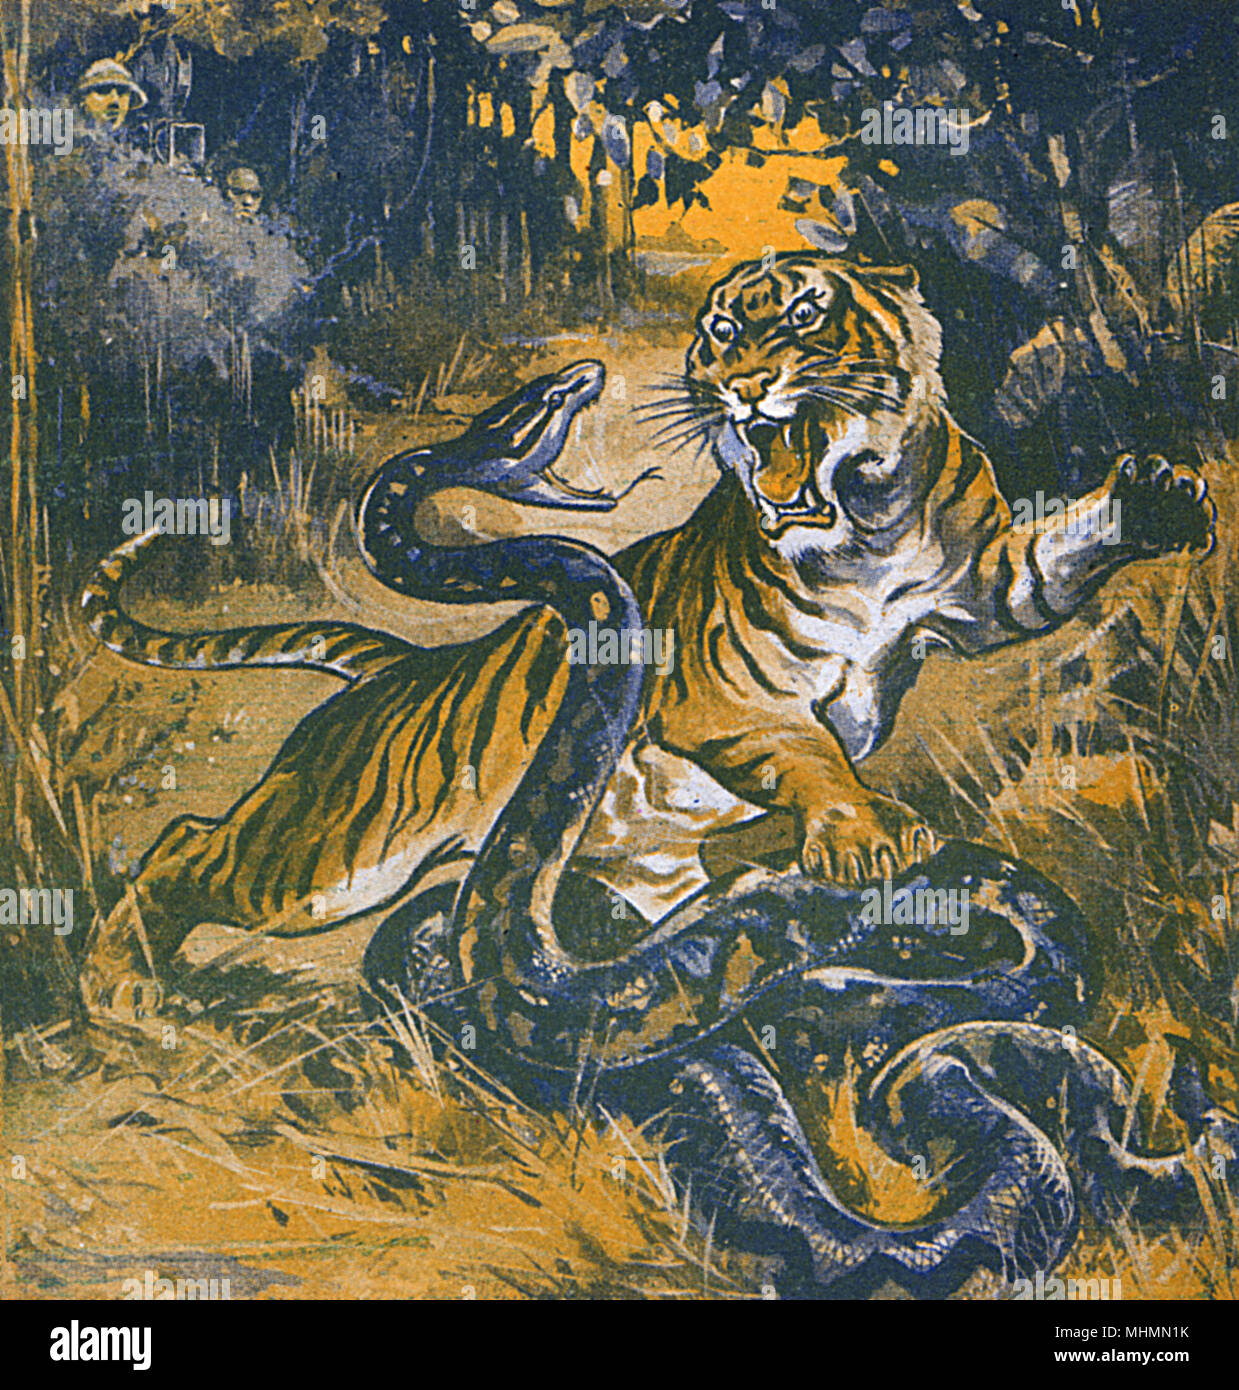 Le tigre et le serpent combattent dans la jungle Banque D'Images